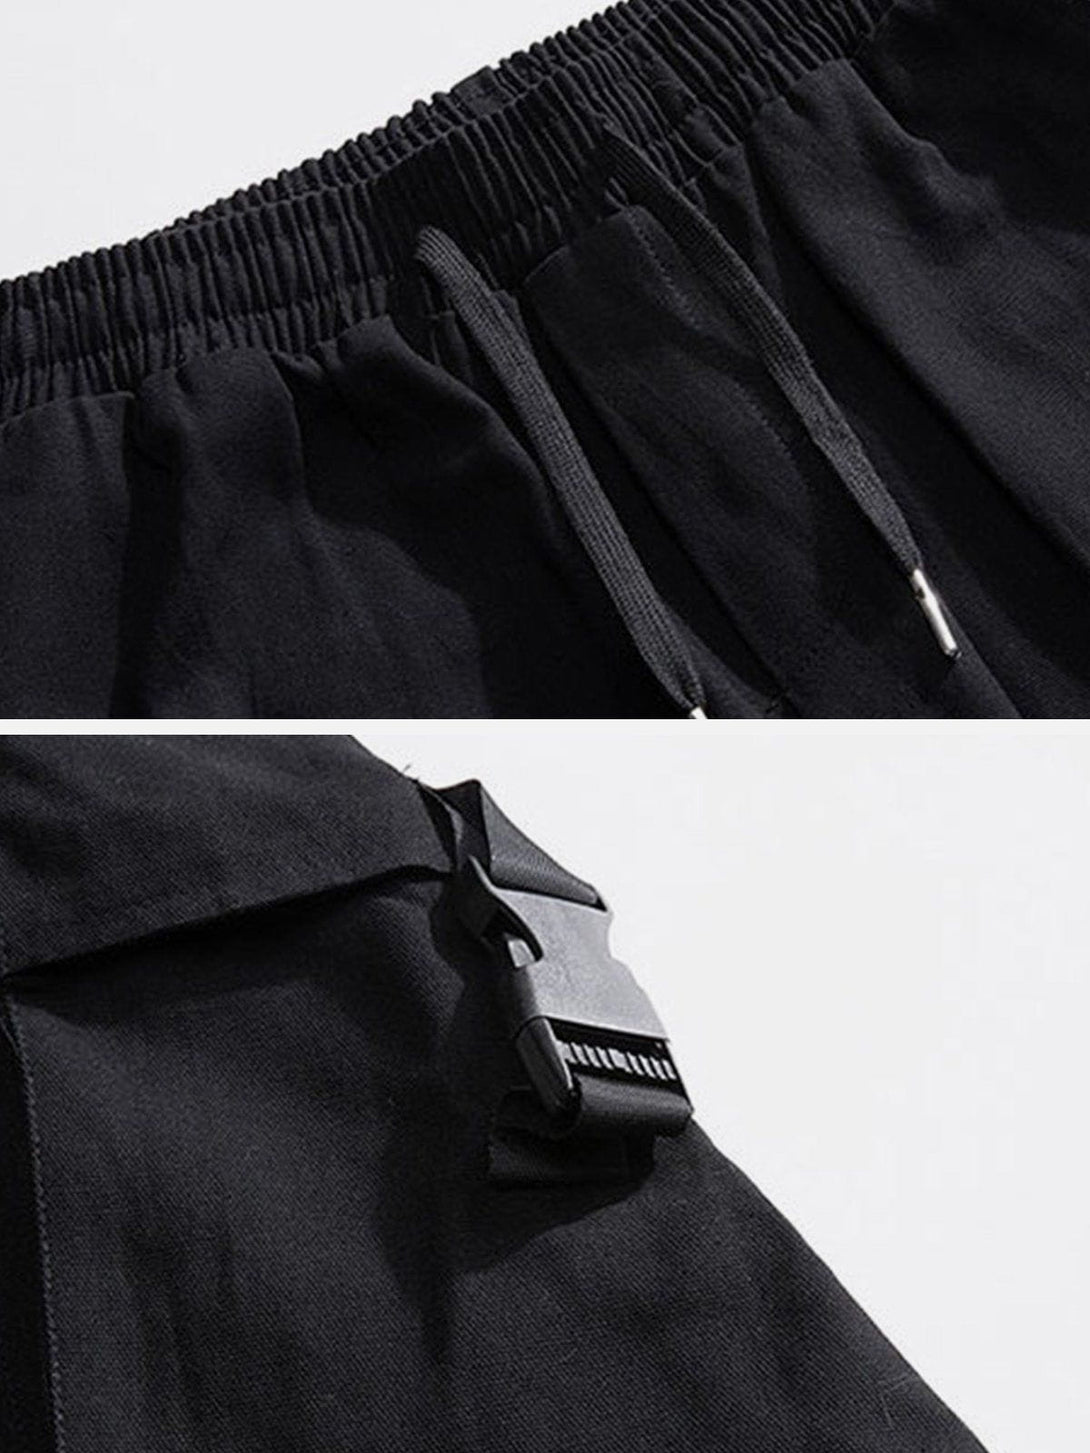 Levefly - Tilt Bag Buckle Pocket Cargo Pants - Streetwear Fashion - levefly.com